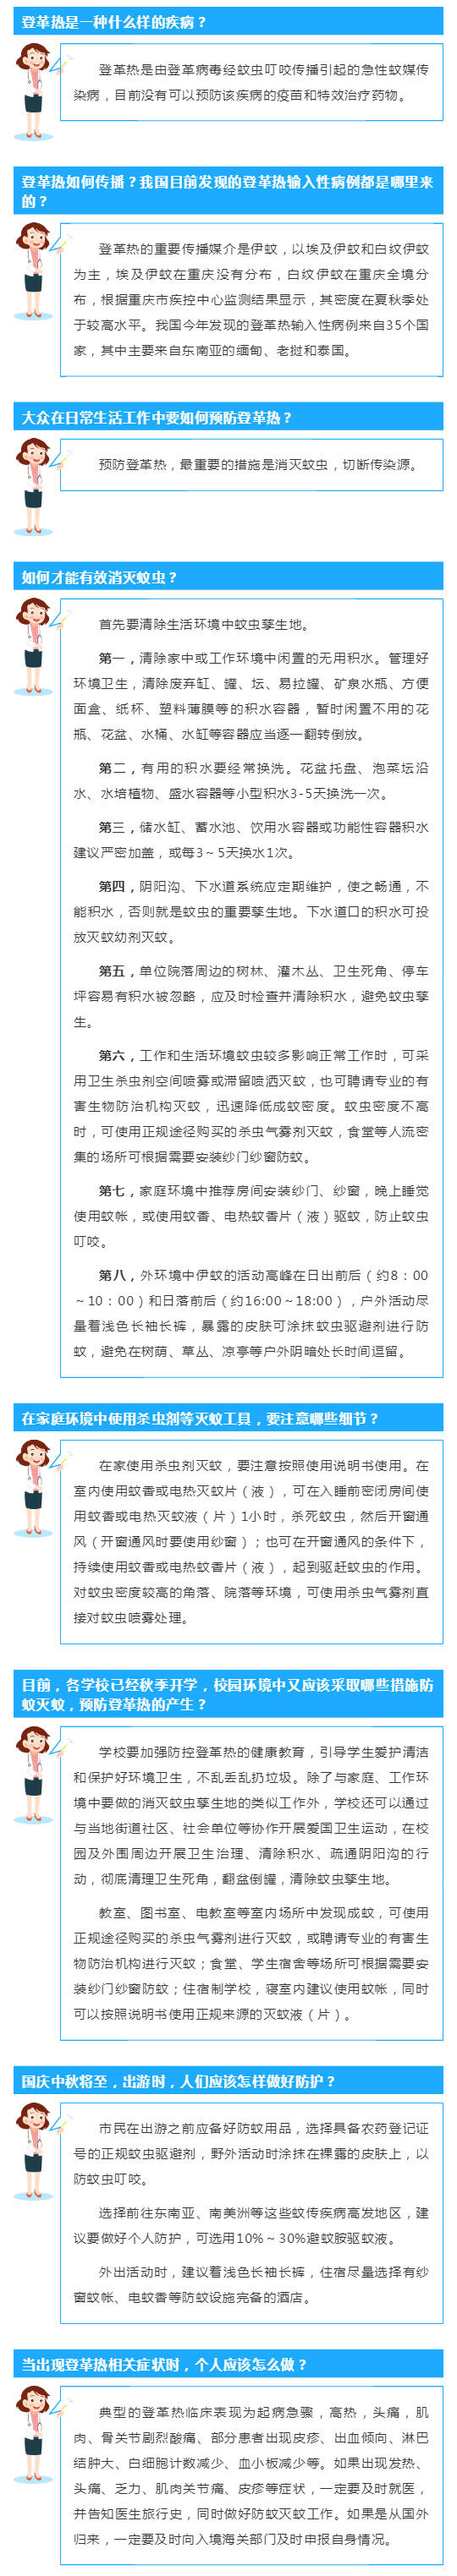 重庆疾控专家带来“登革热预防手册”_壹伴长图1.jpg